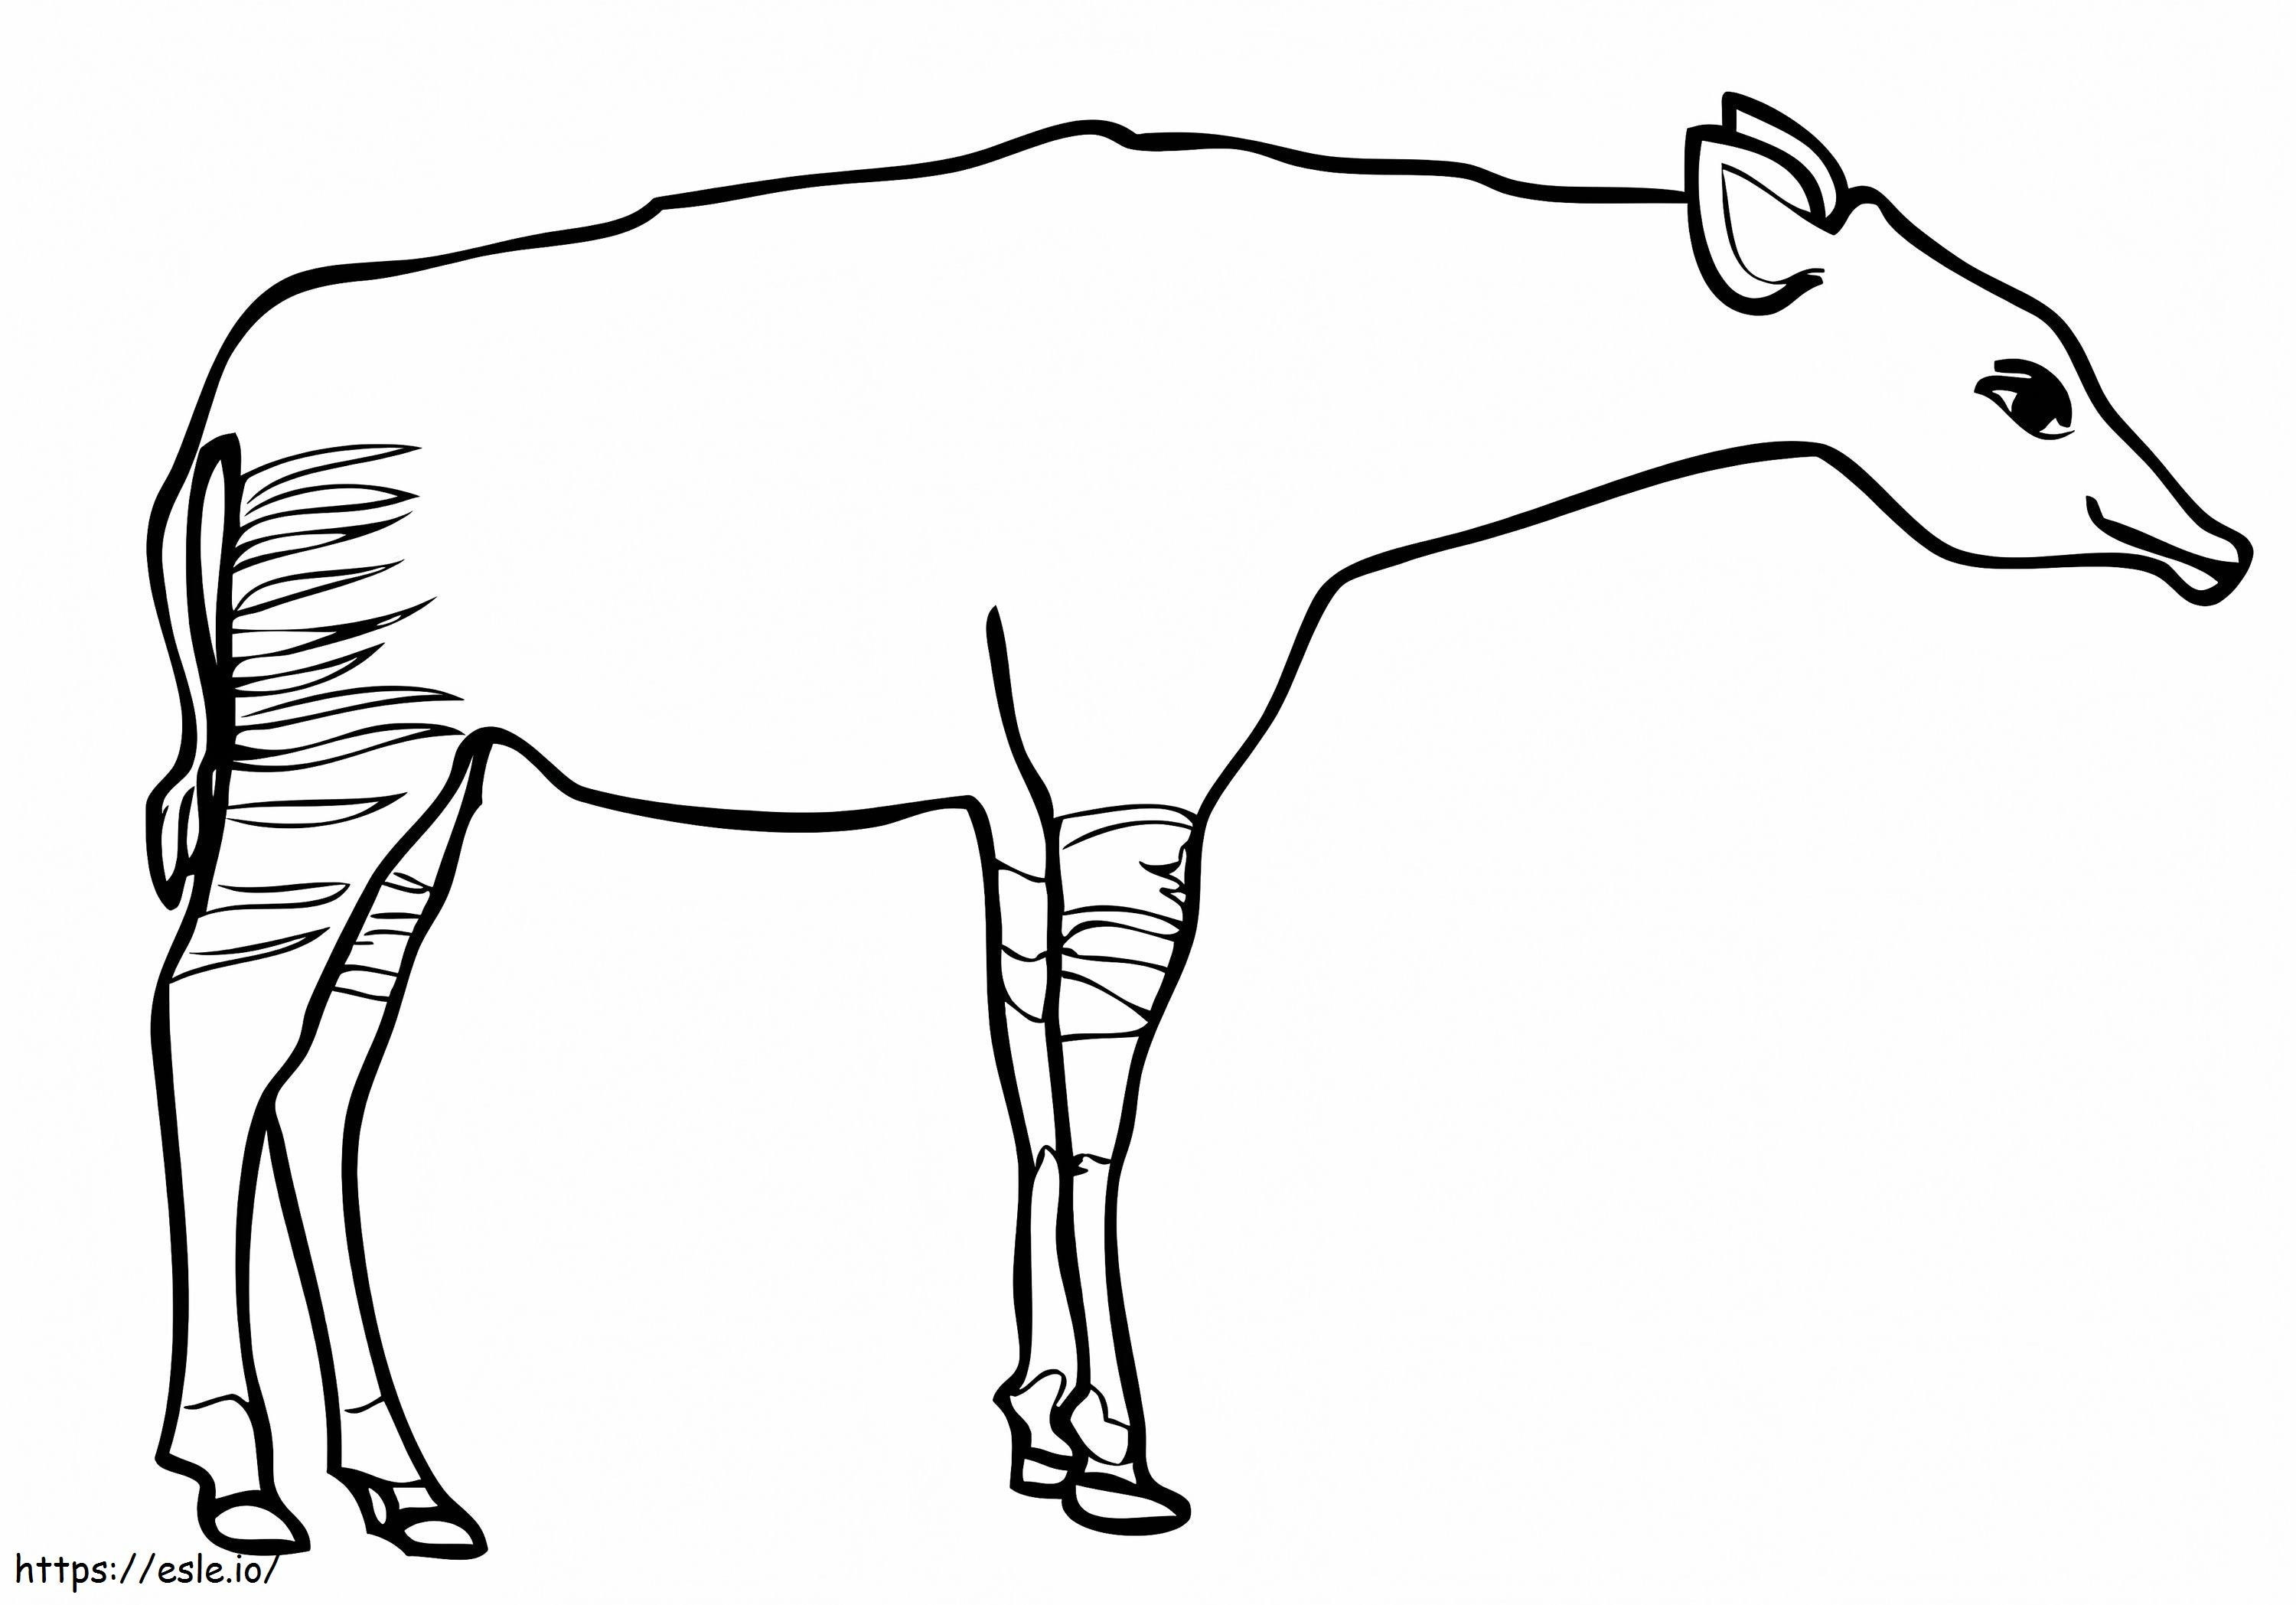 Jirafa okapi para colorear